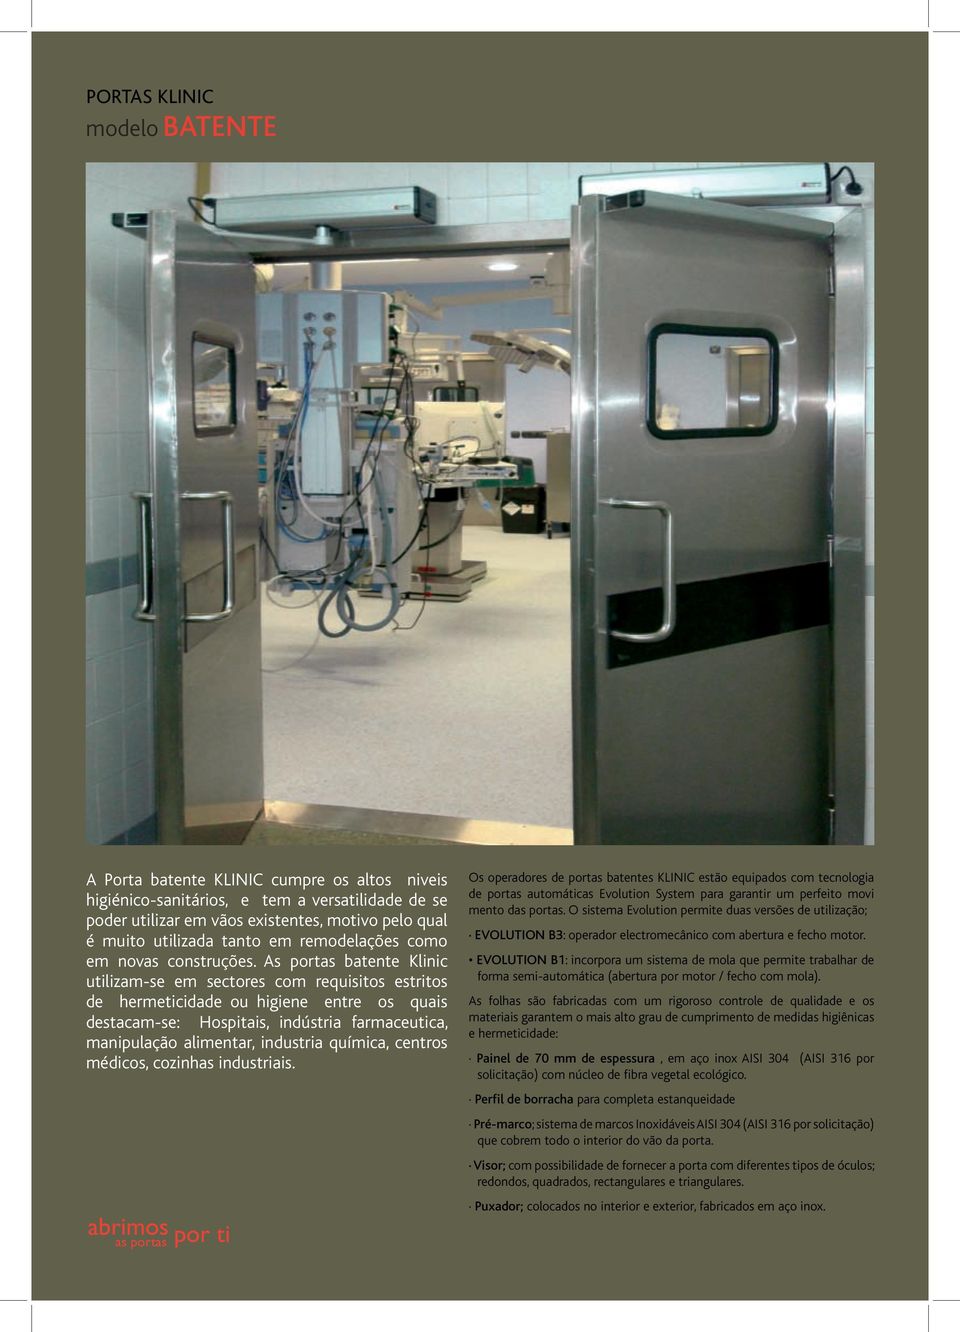 As portas batente Klinic utilizam-se em sectores com requisitos estritos de hermeticidade ou higiene entre os quais destacam-se: Hospitais, indústria farmaceutica, manipulação alimentar, industria